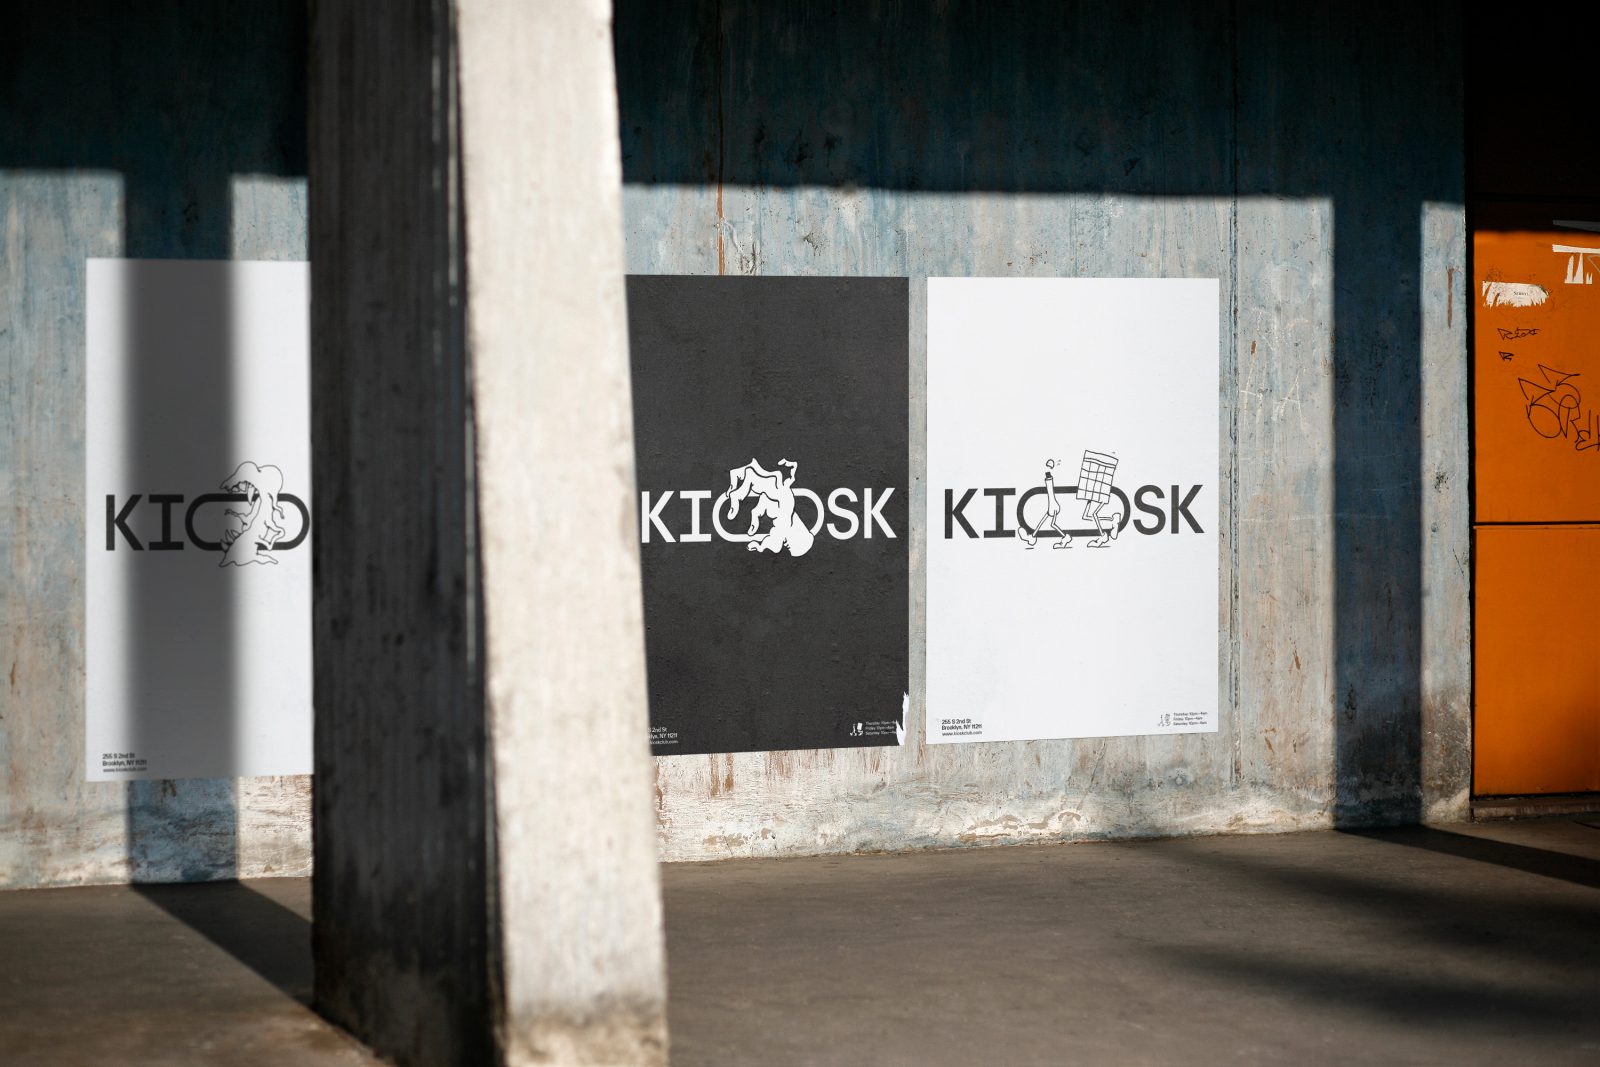 Brand Design for Kiosk